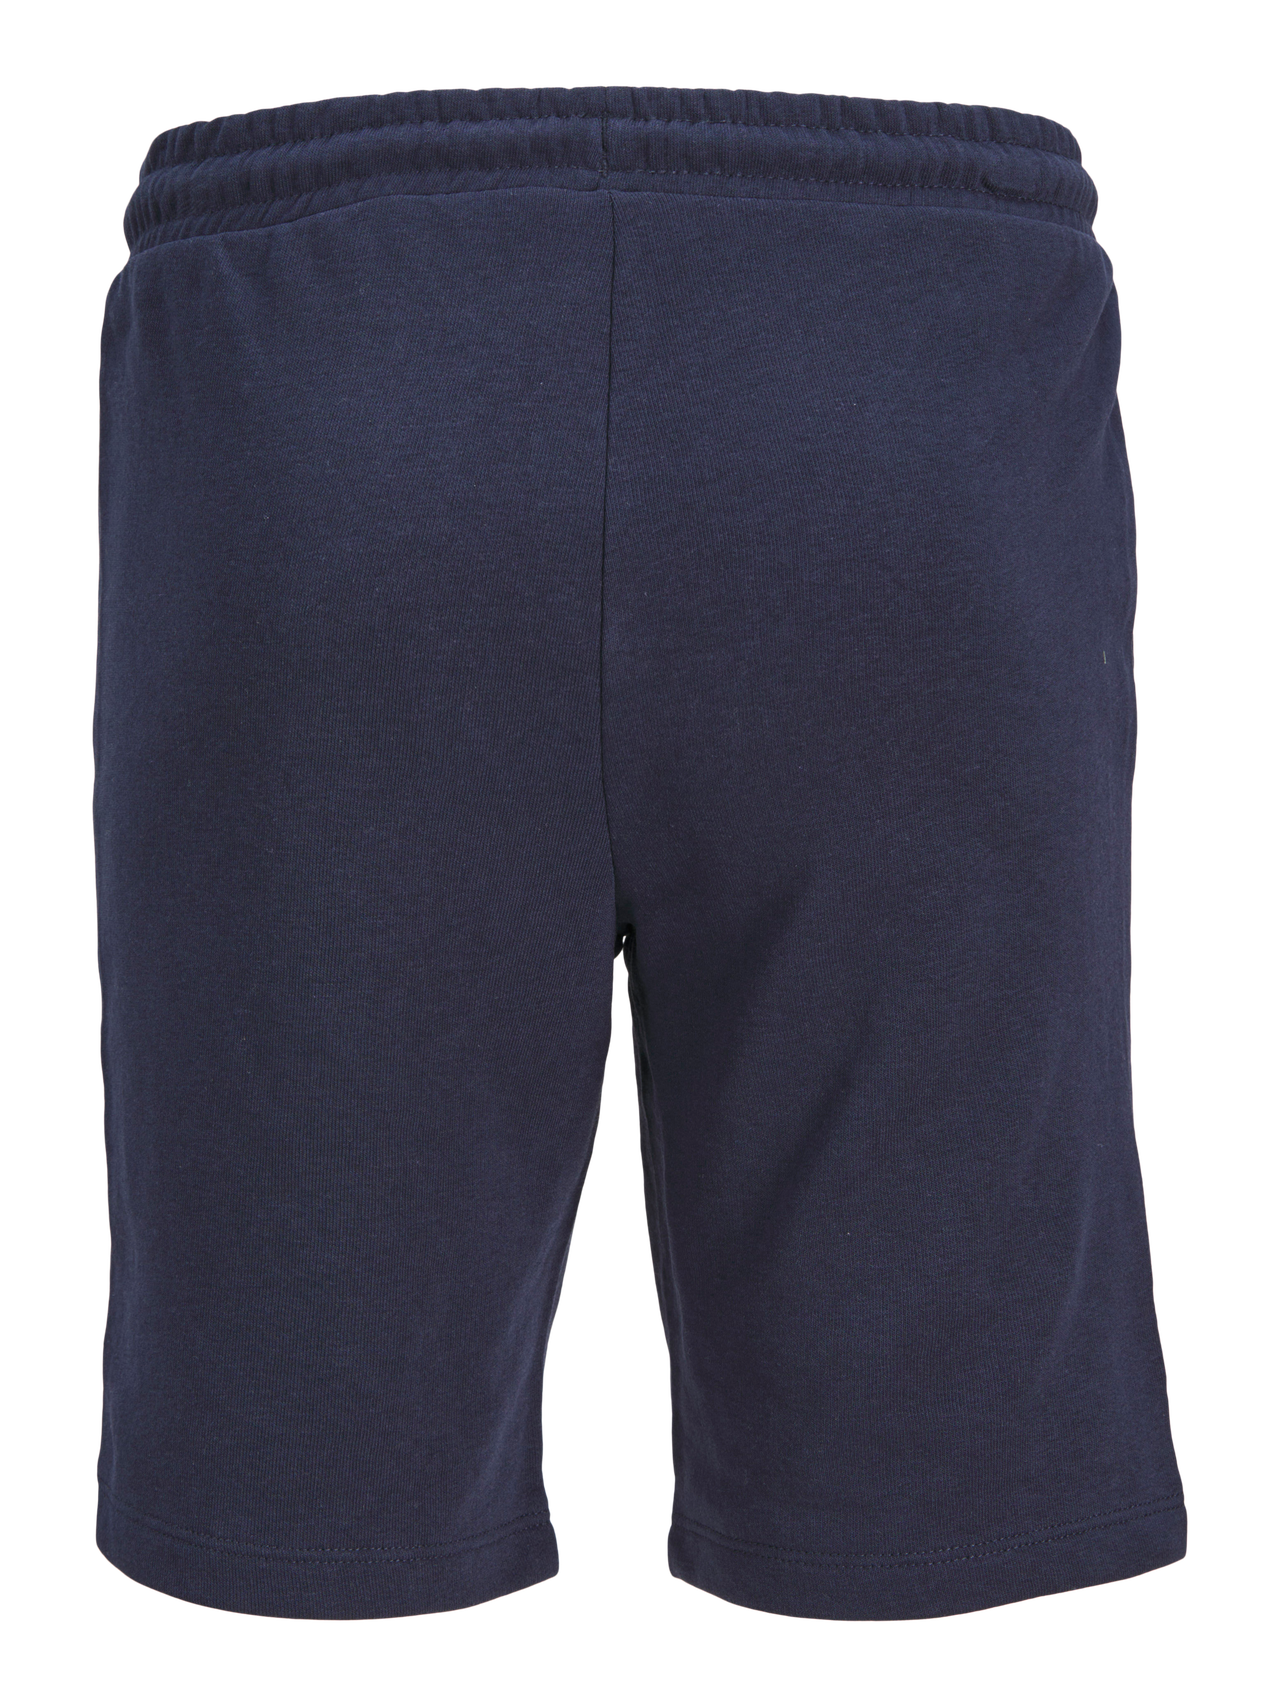 Jack & Jones Slim Fit Szorty dresowe Dla chłopców -Navy Blazer - 12255265